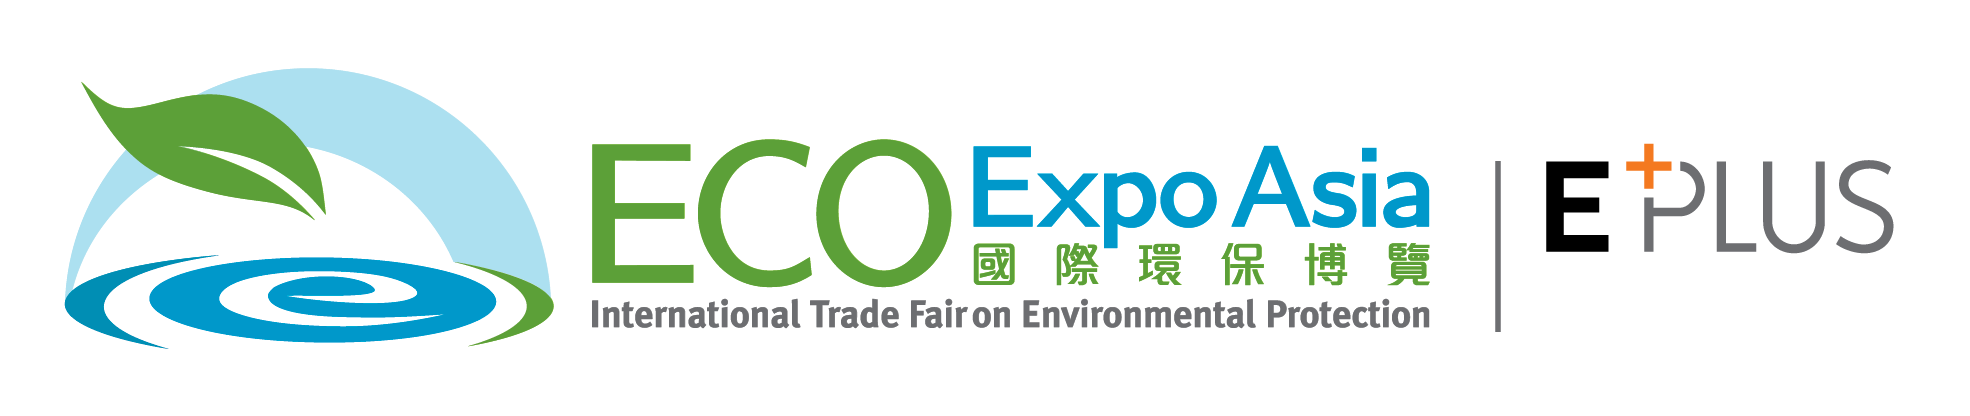 ECO EXPO Asia